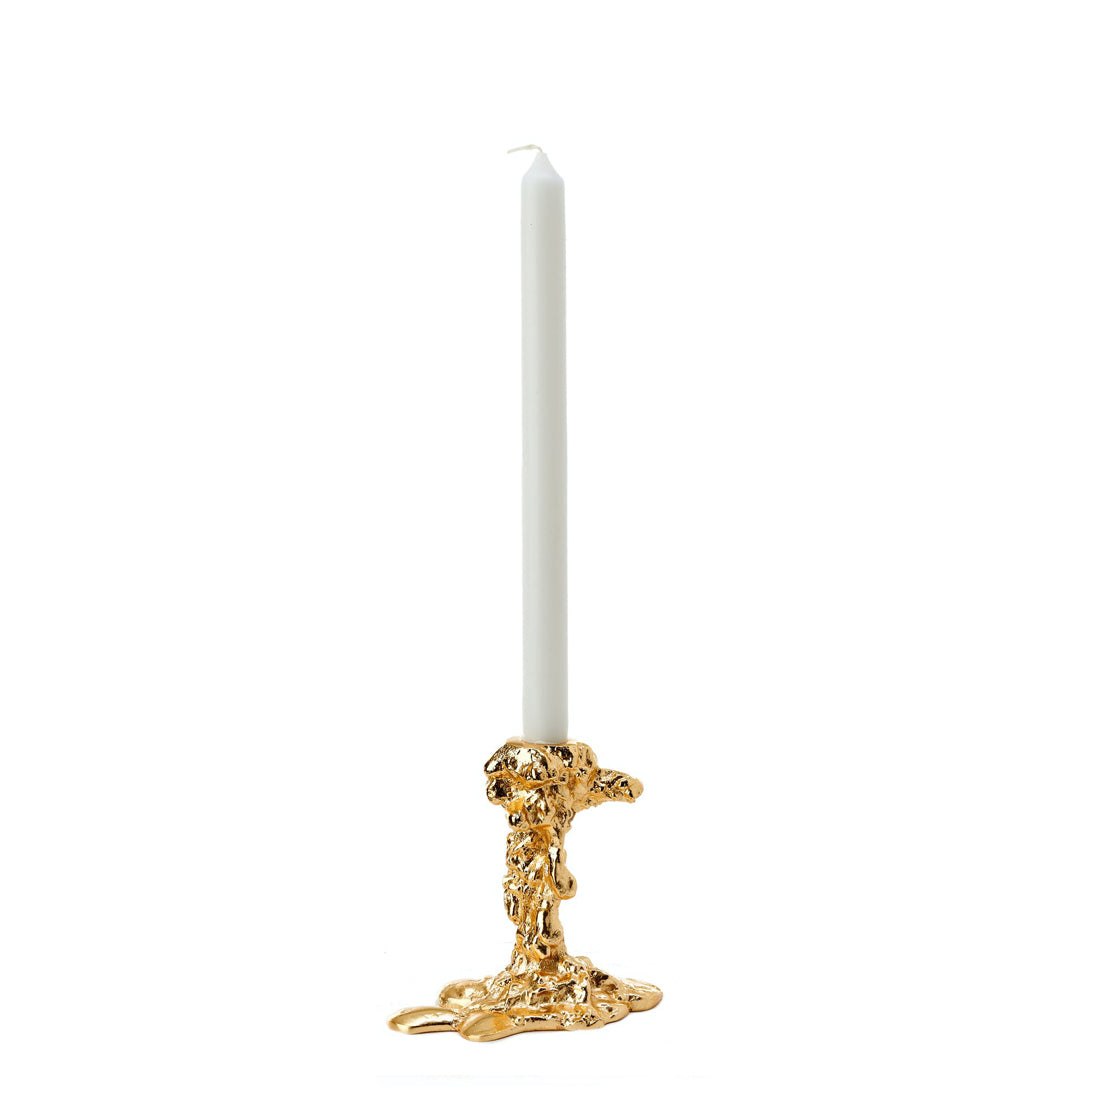 Drip lysestake i fra Pols Potten. Den deformerte lysestaken i gull, som ser ut som renendes stearin.